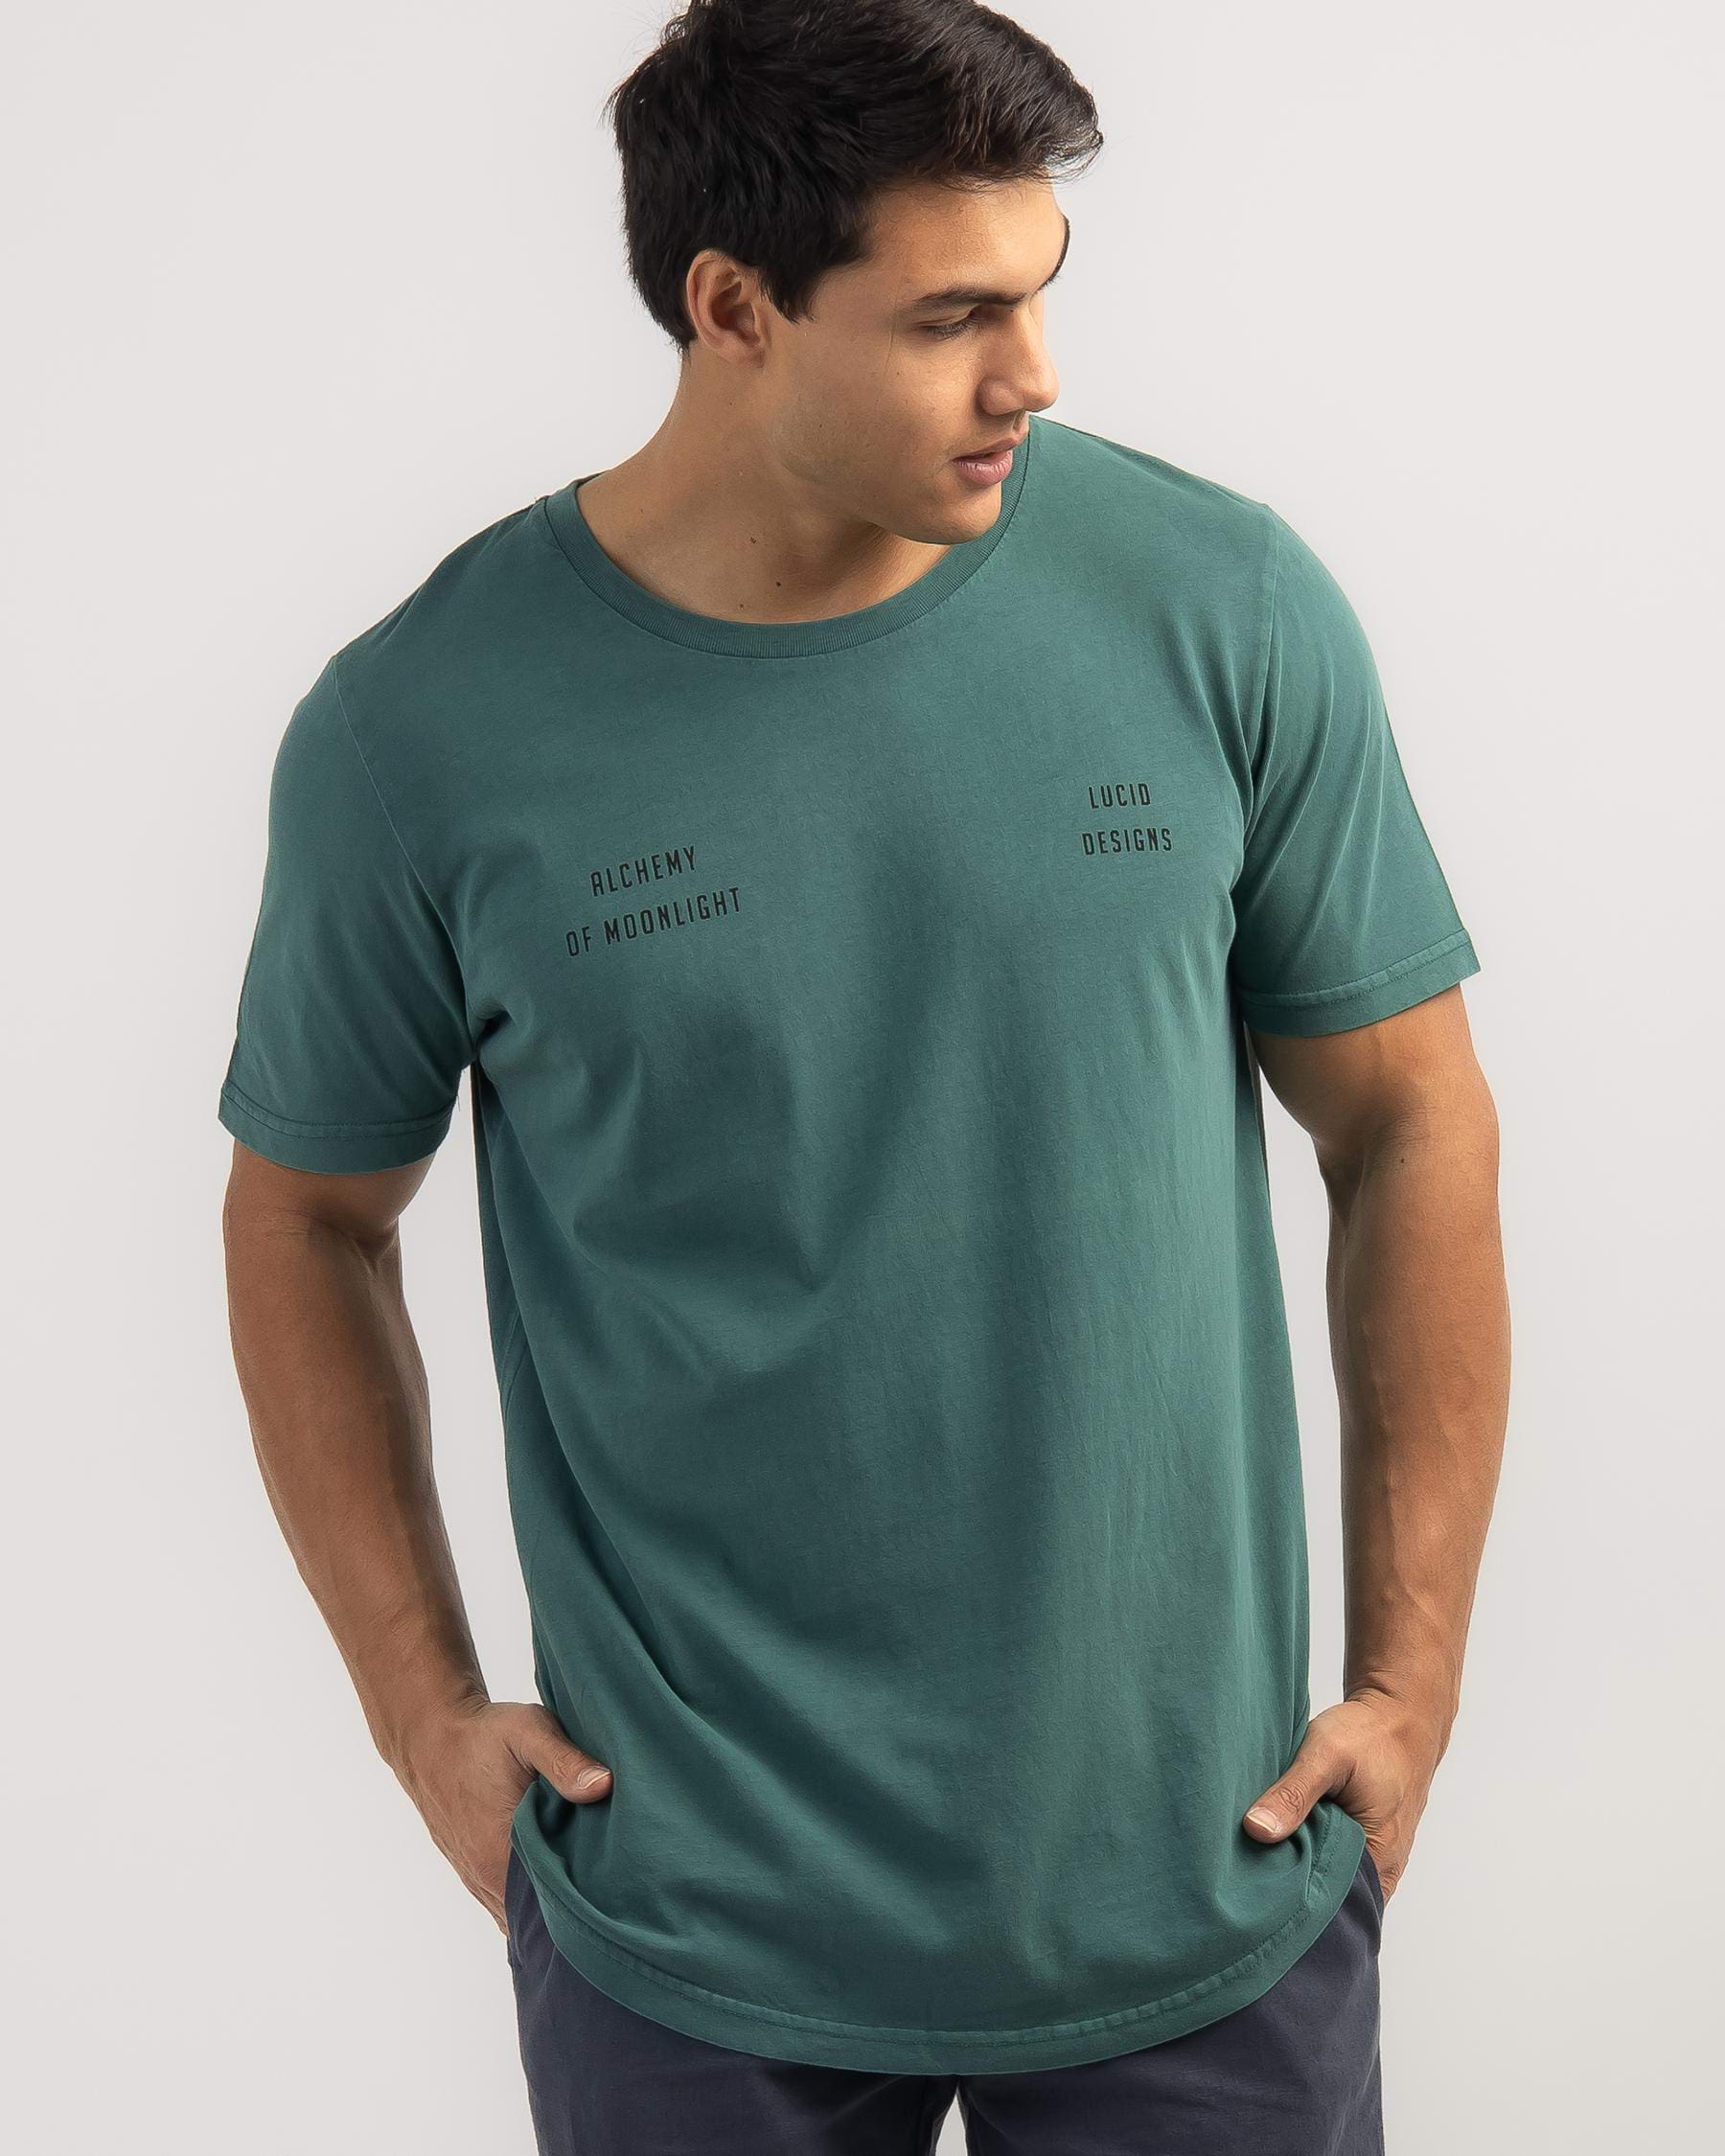 Lucid Impulse T-Shirt In Green Overdye - Fast Shipping & Easy Returns ...